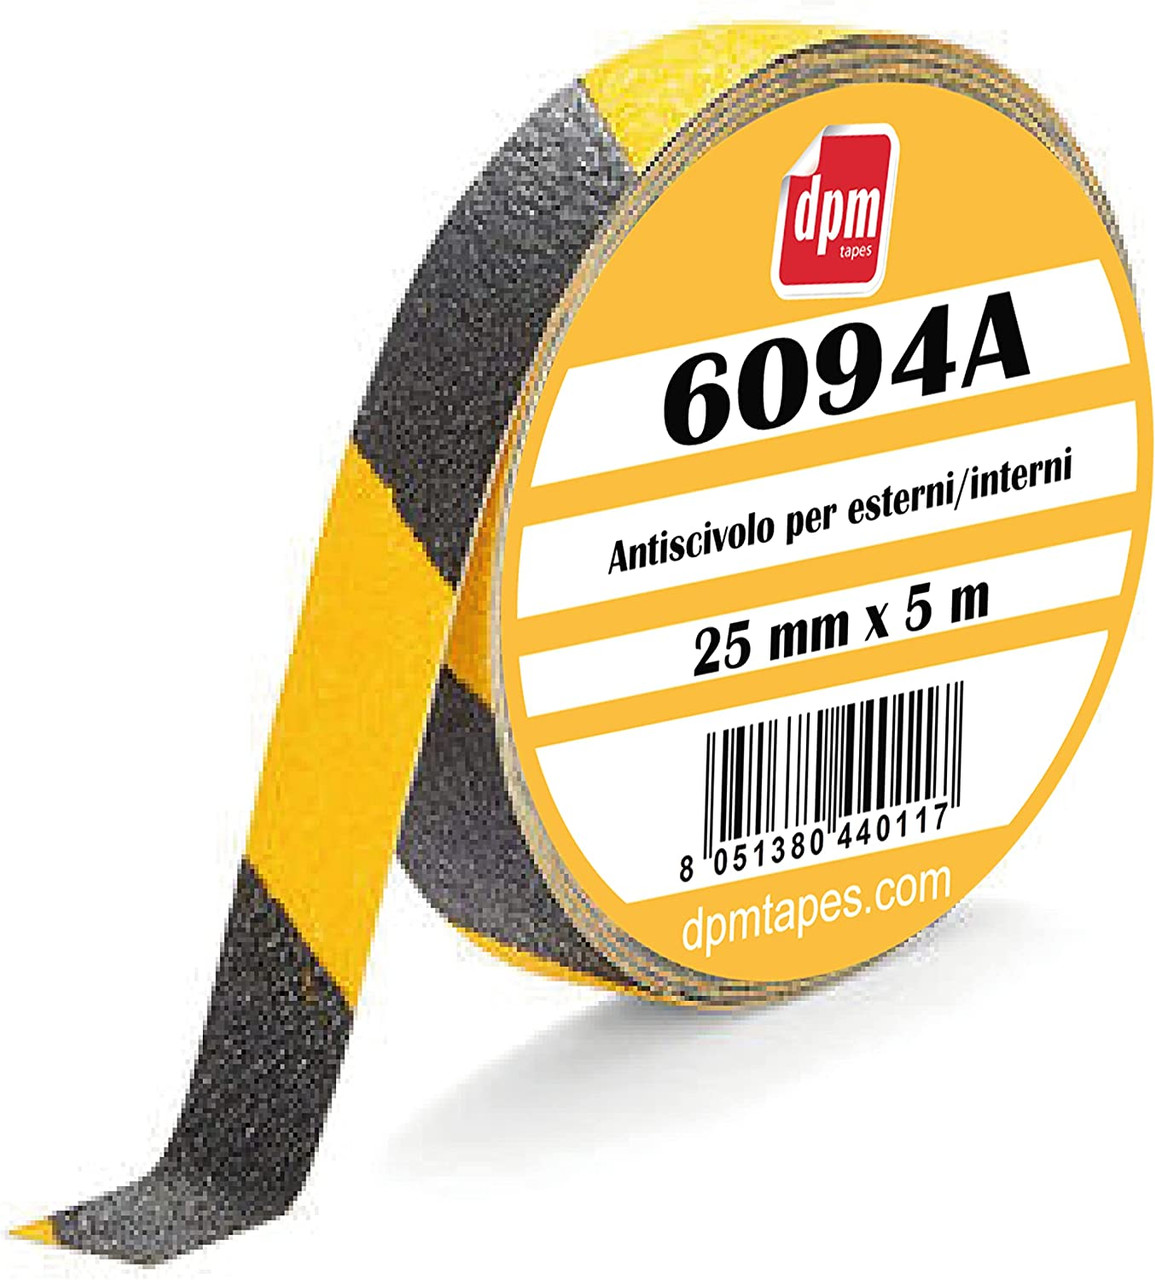 6094A - Nastro Adesivo antiscivolo giallo/nero per interni/esterni